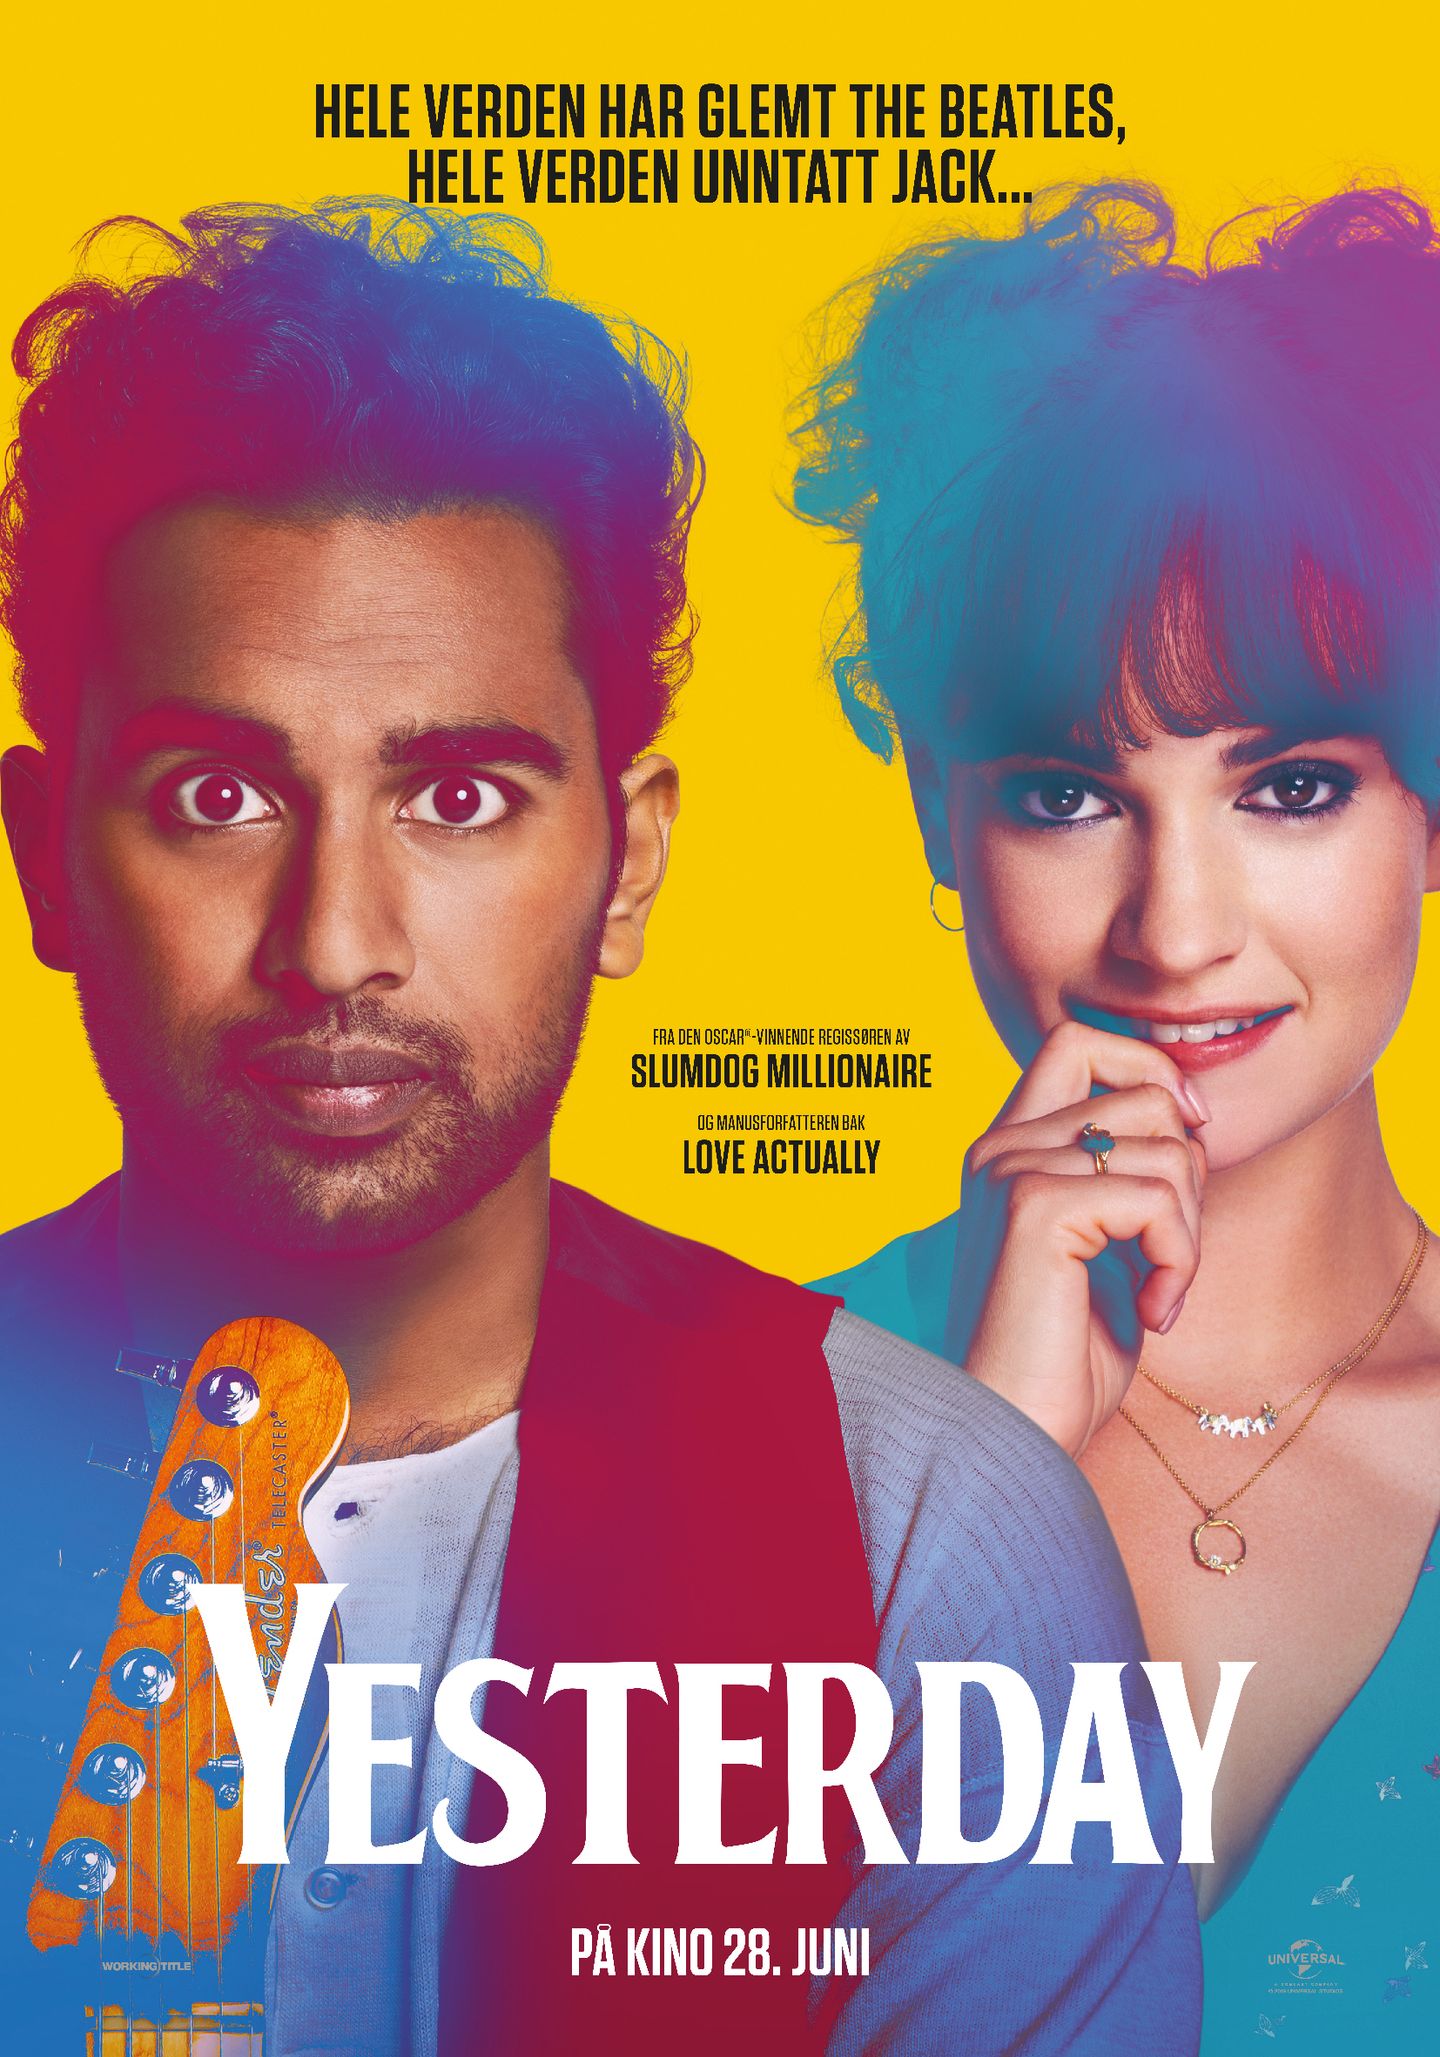 Plakat for 'Yesterday'